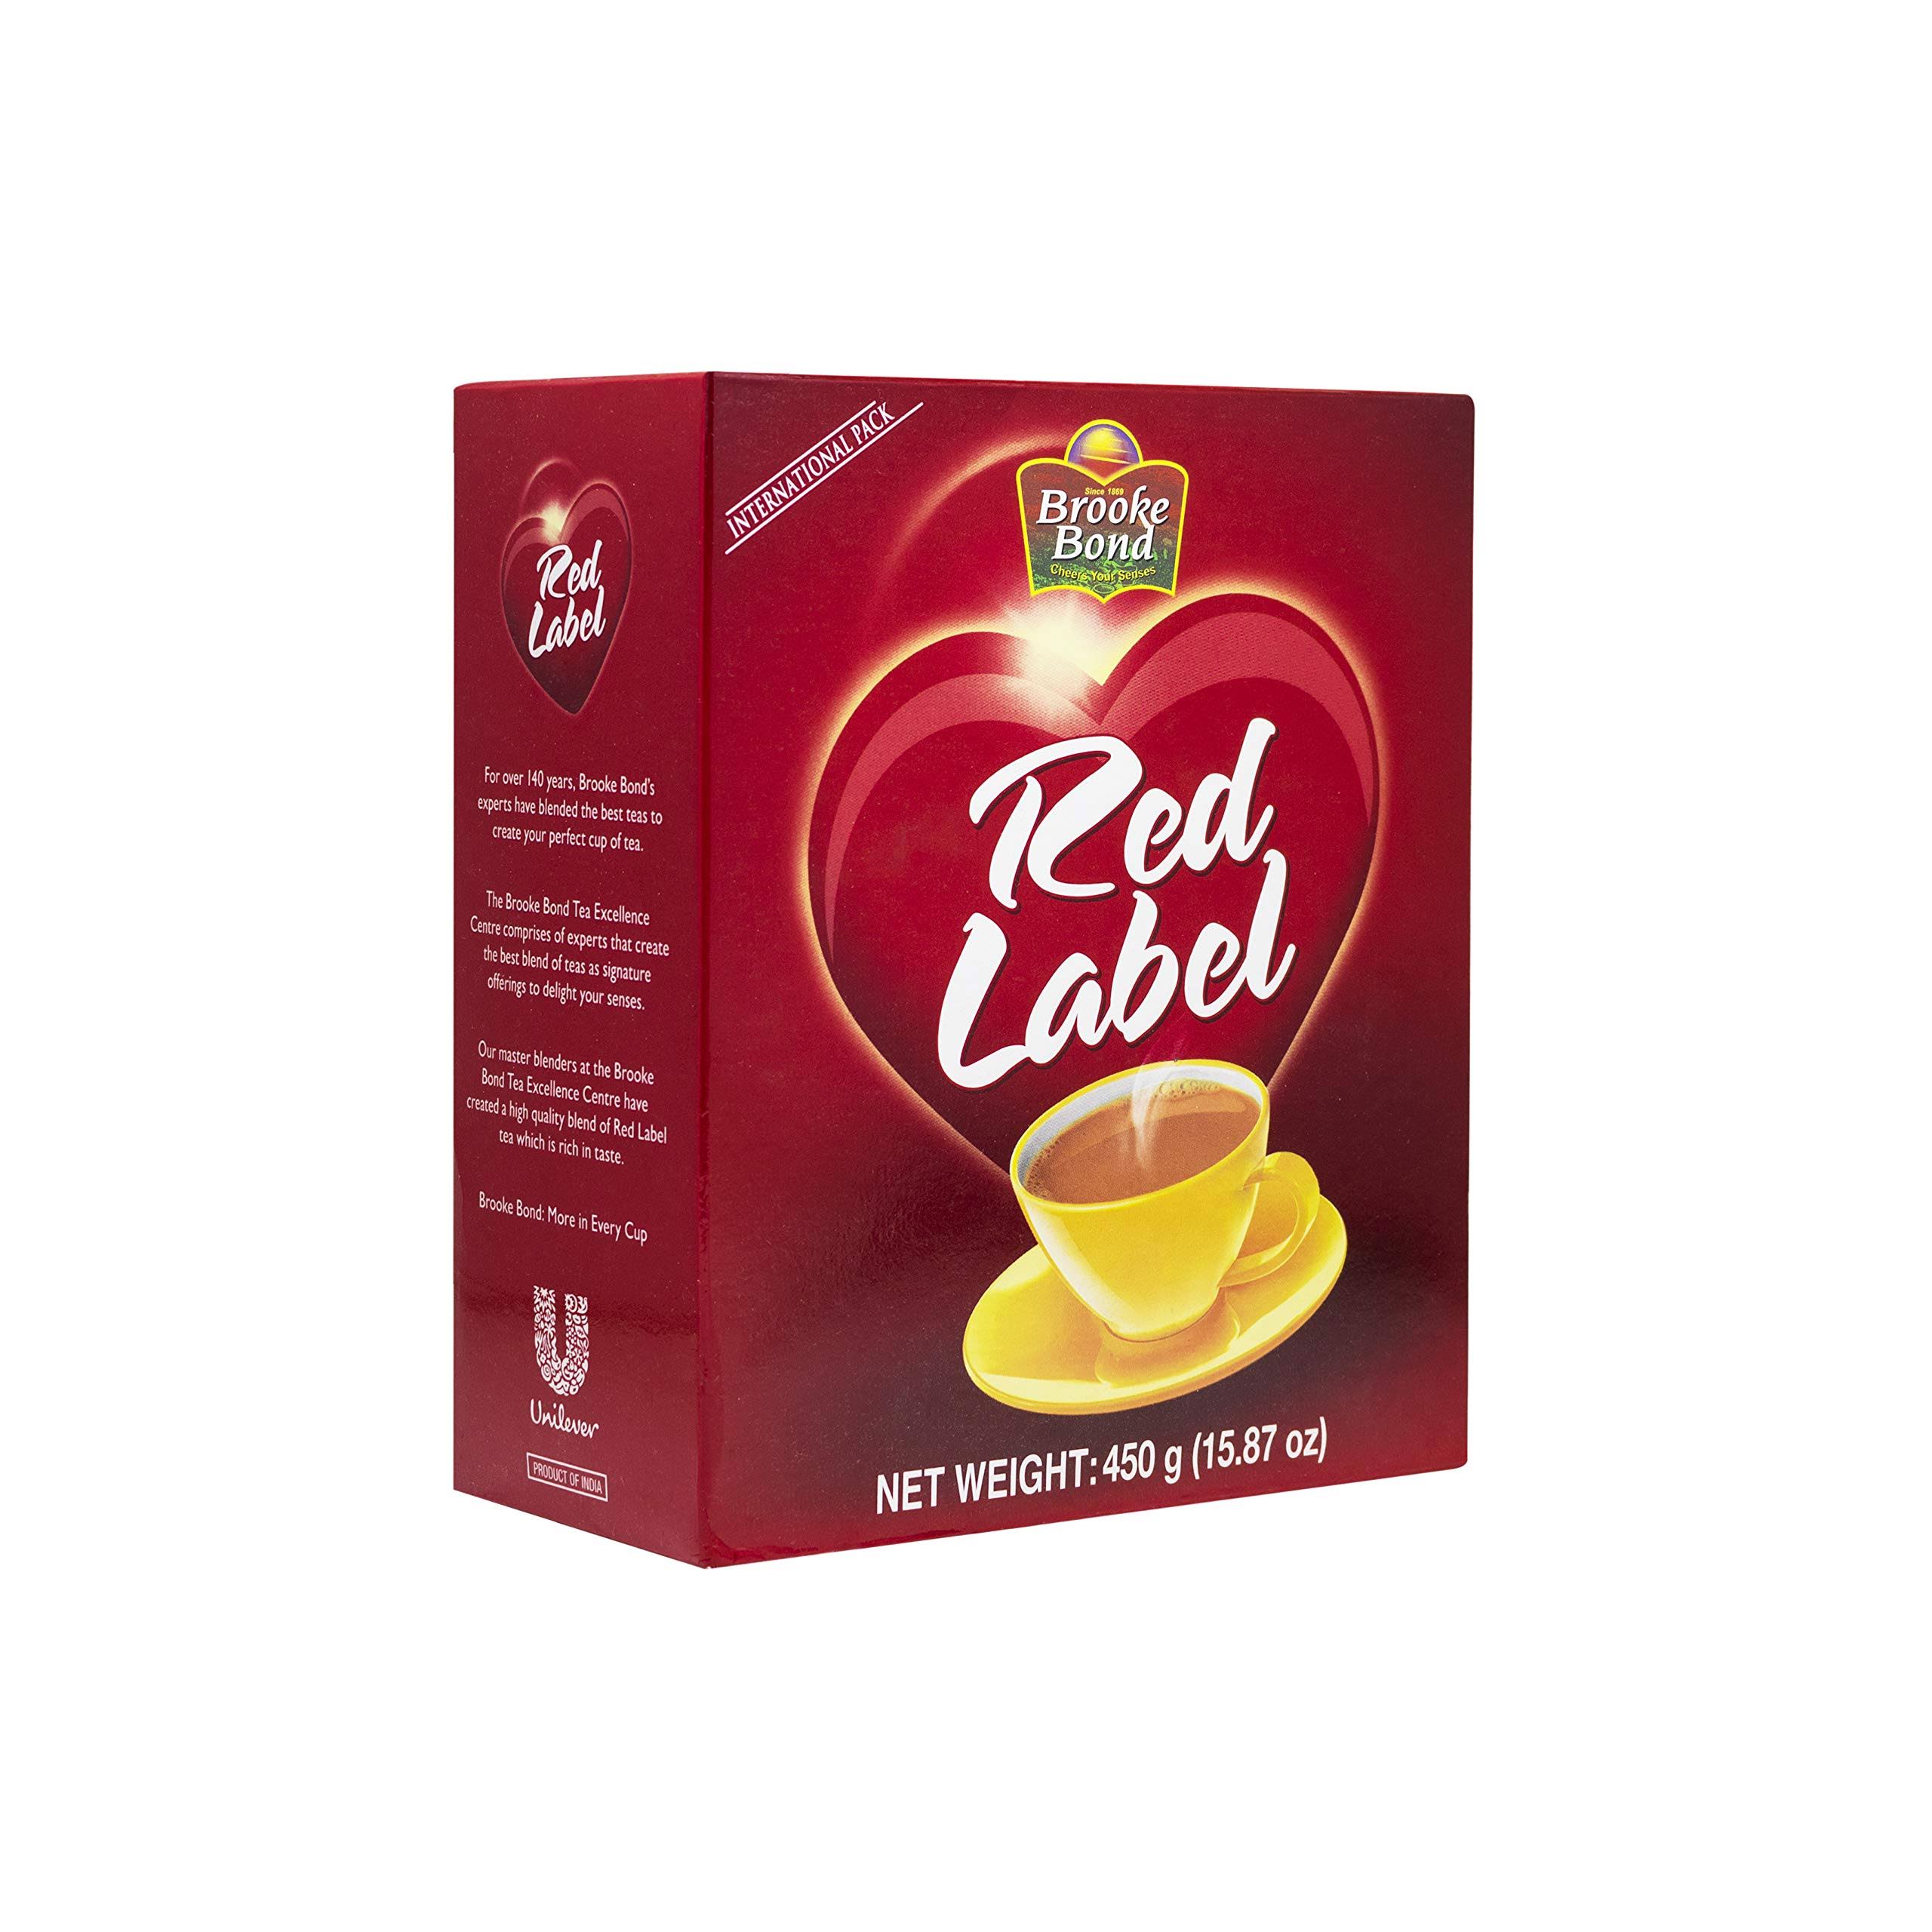 Brooke Bond Red Label Loose Leaf Black Tea - 31.7oz